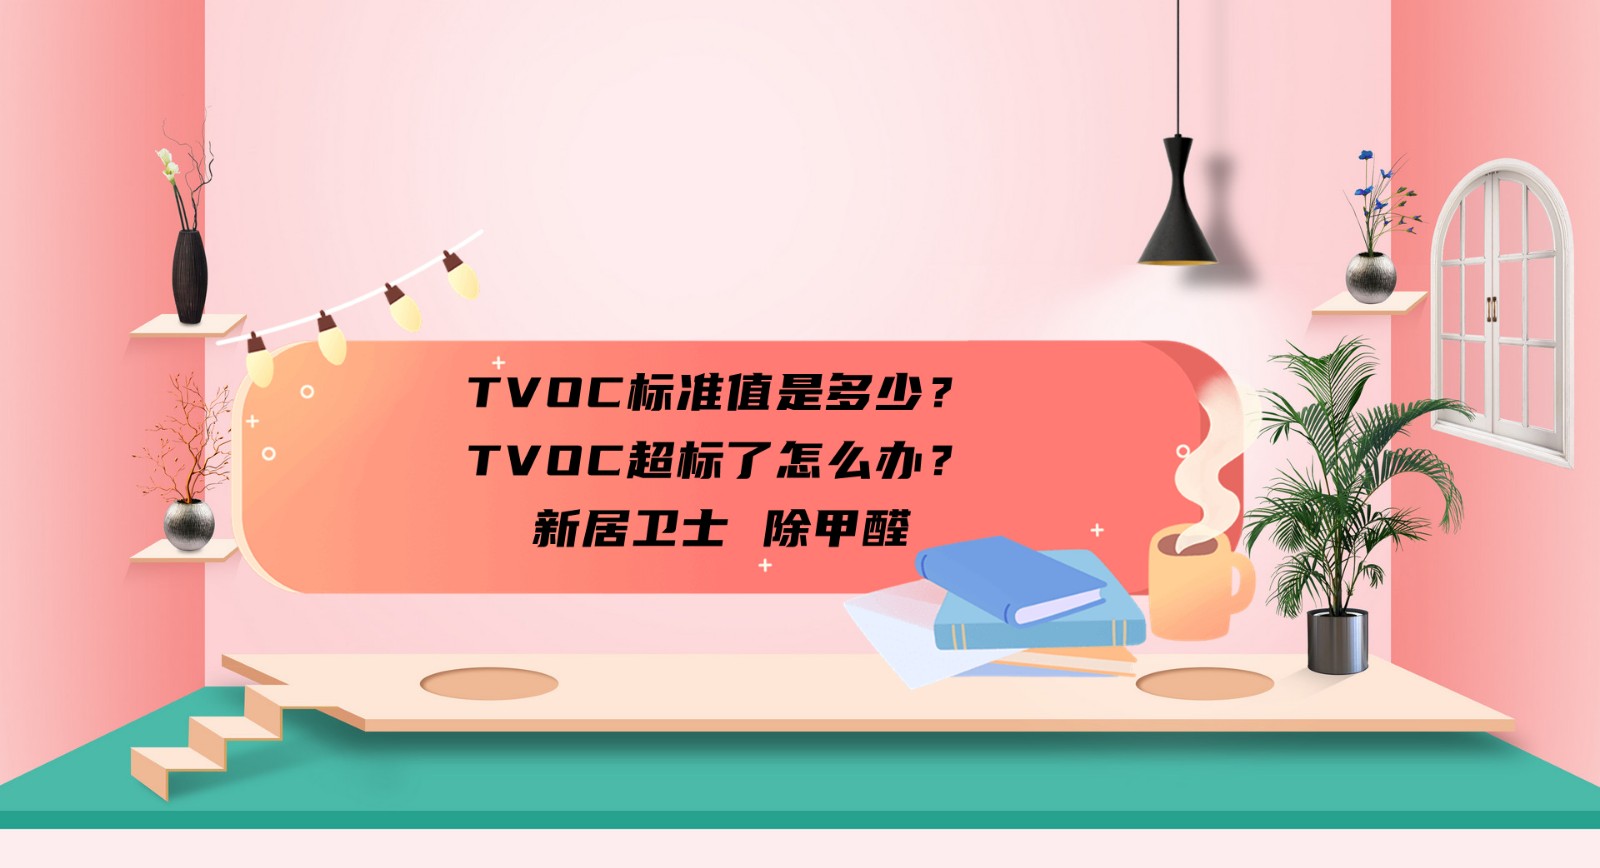 TVOC标准值是多少？TVOC超标了怎么办？